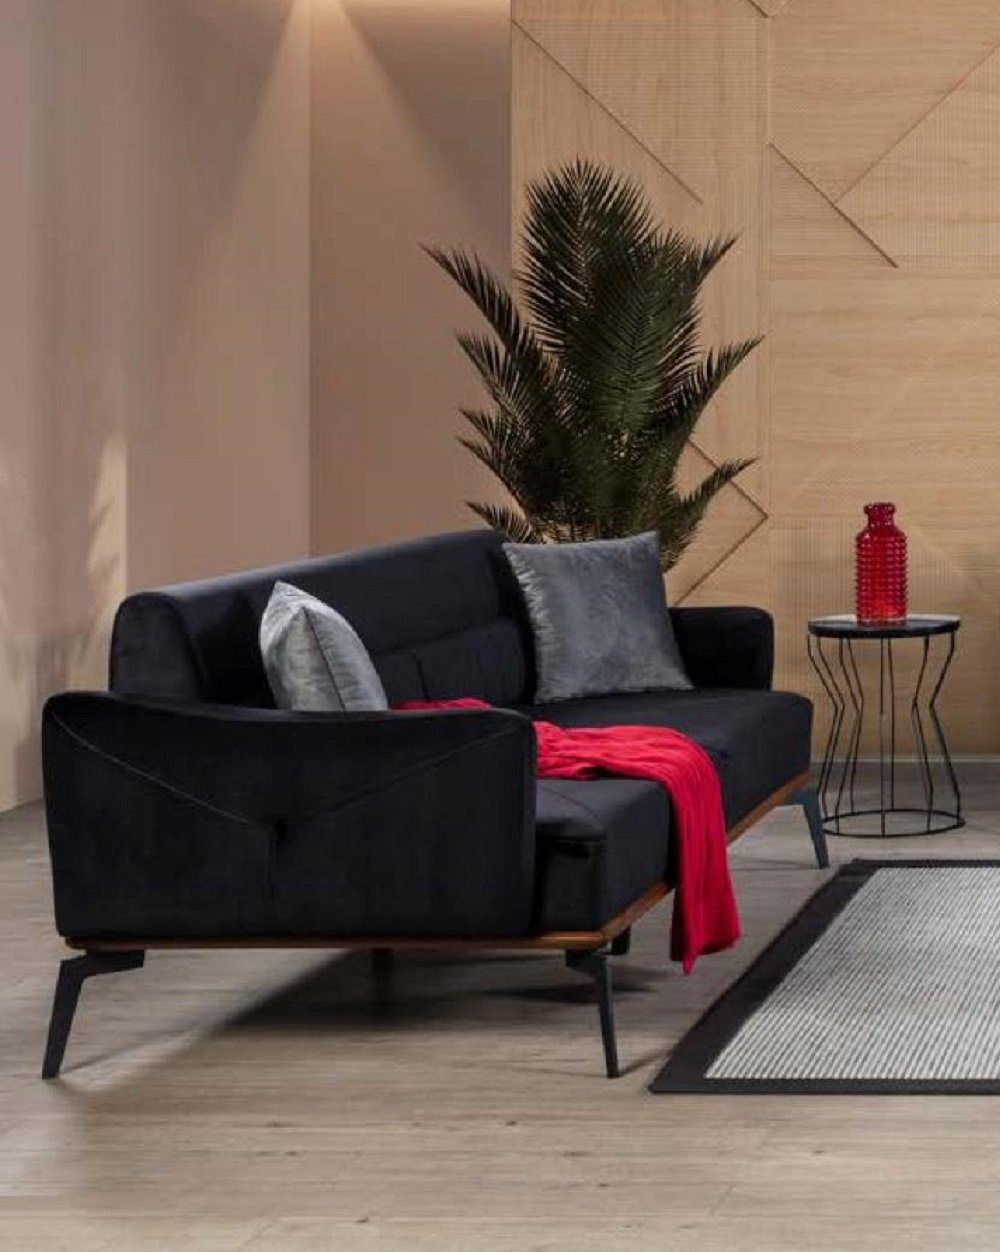 JVmoebel 3-Sitzer Design Couch 3 Sitz Polster Textil Couchen Sofa Dreisitzer Stoff